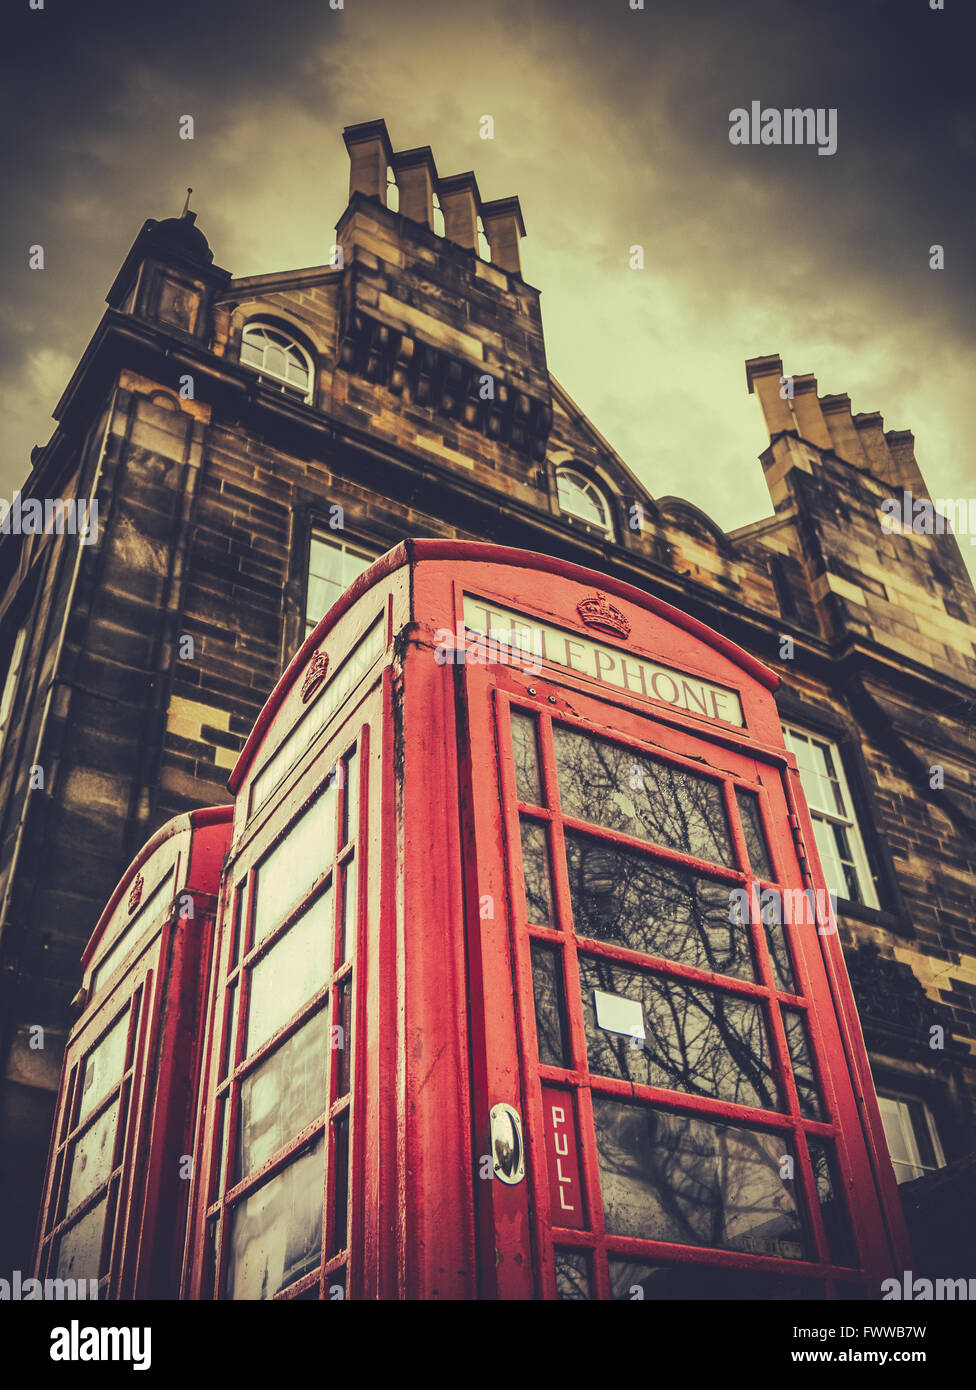 Une Phonebox Vintage britannique dans une ville britannique Banque D'Images